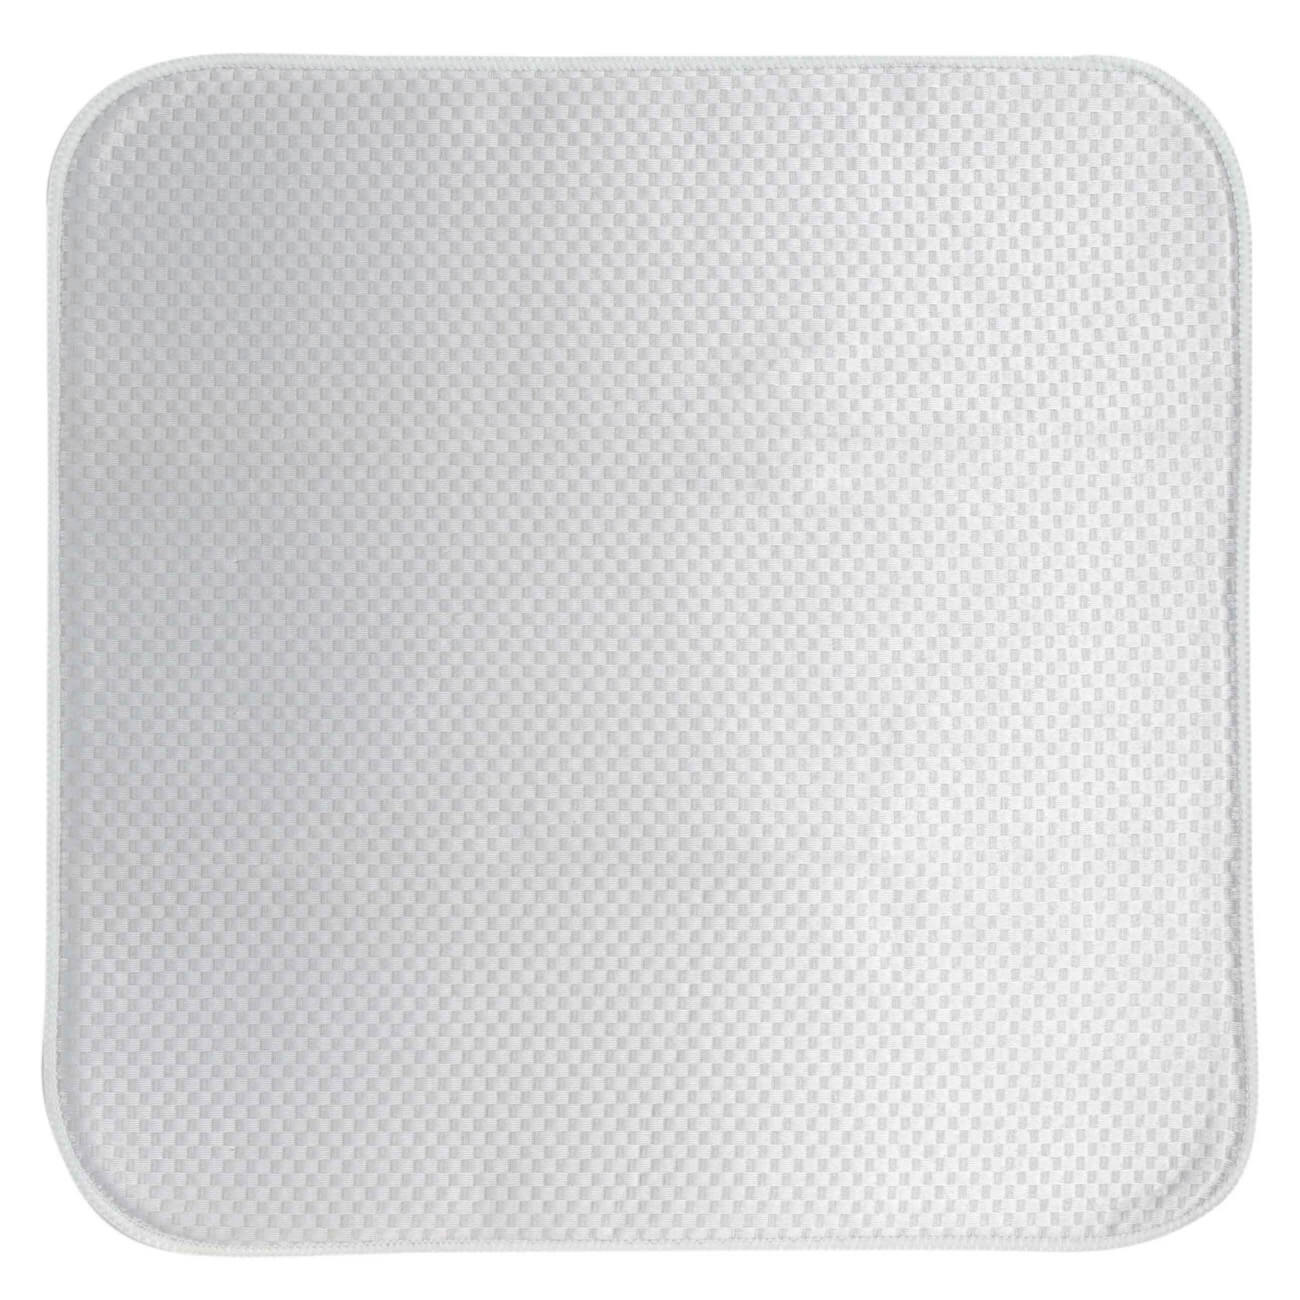 Коврик для сушки посуды, 44x44 см, микрофибра, серый, Clean изображение № 1